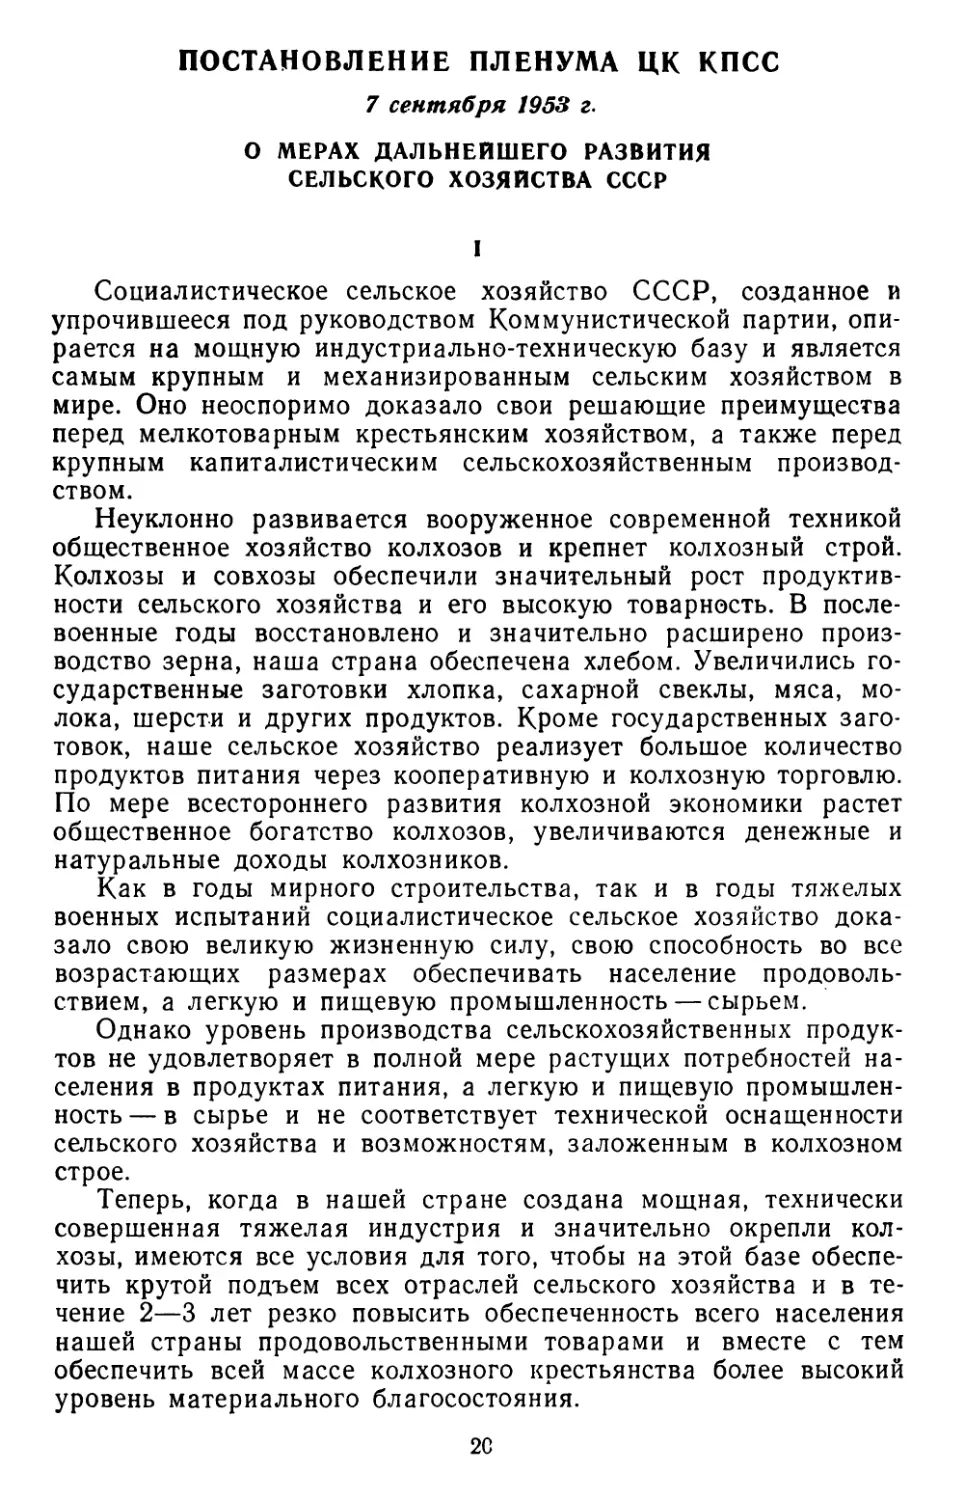 Постановление пленума ЦК КПСС, 7 сентября 1953 г. О мерах дальнейшего развития сельского хозяйства СССР